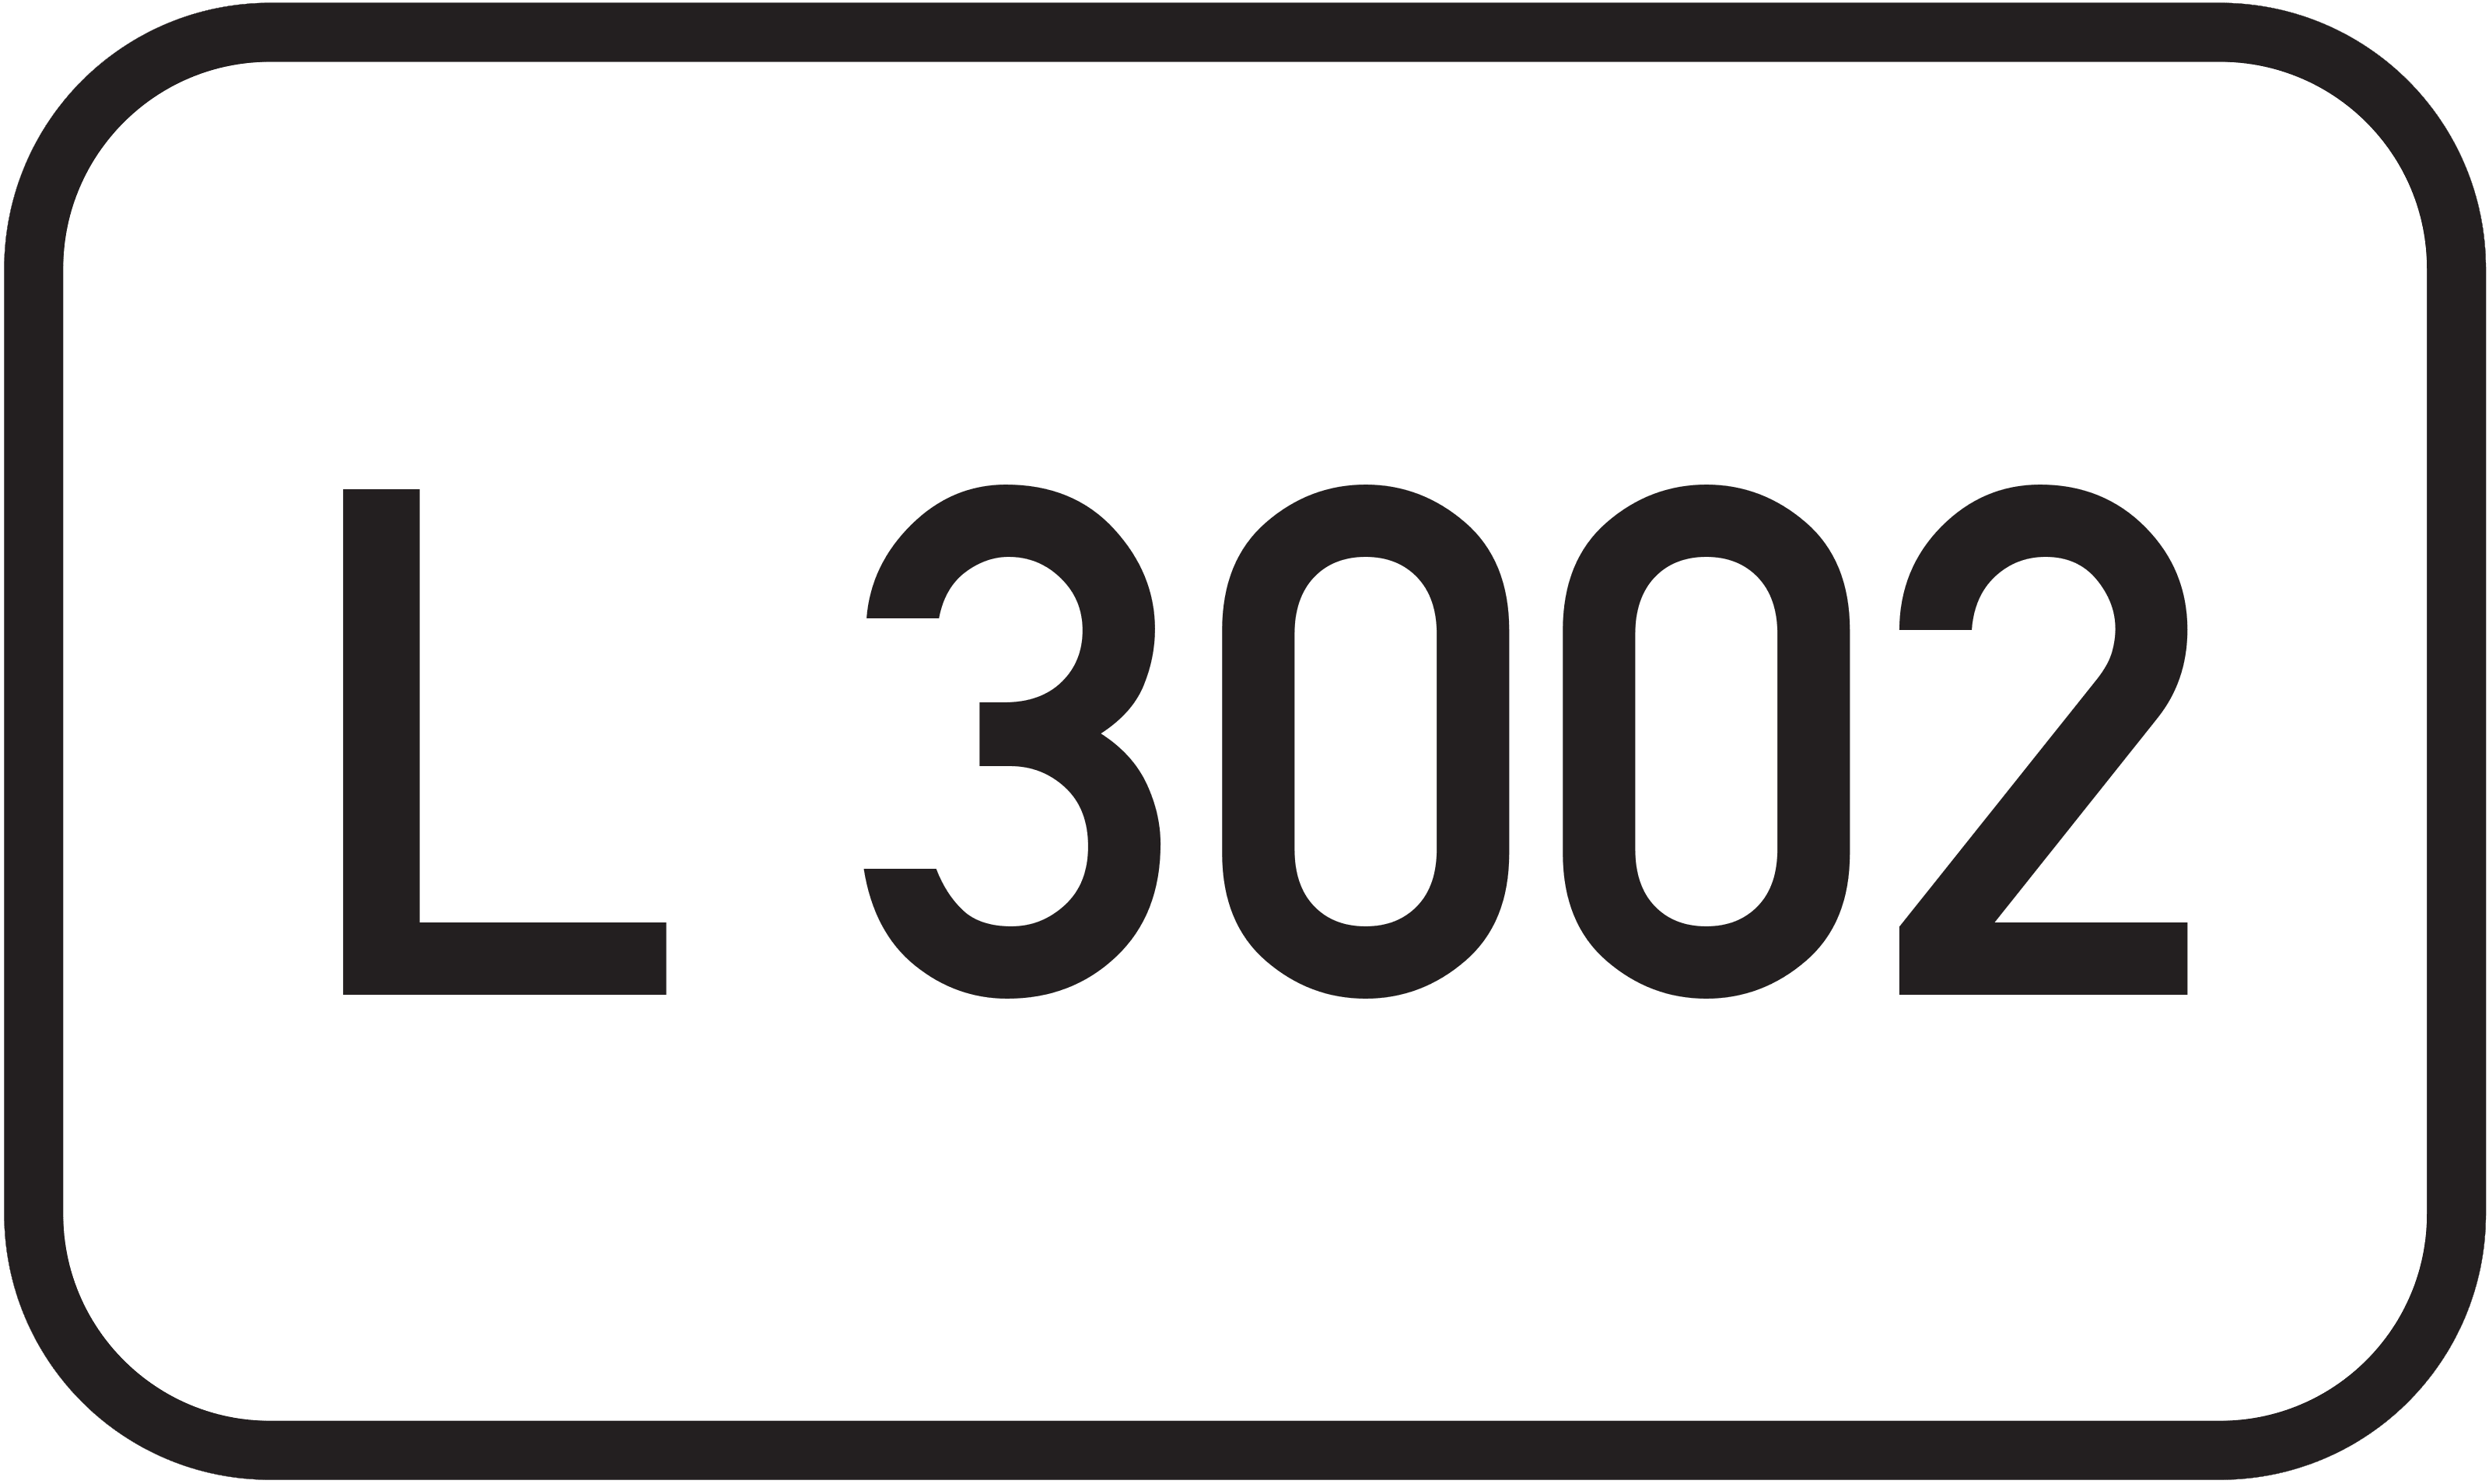 Landesstraße L 3002